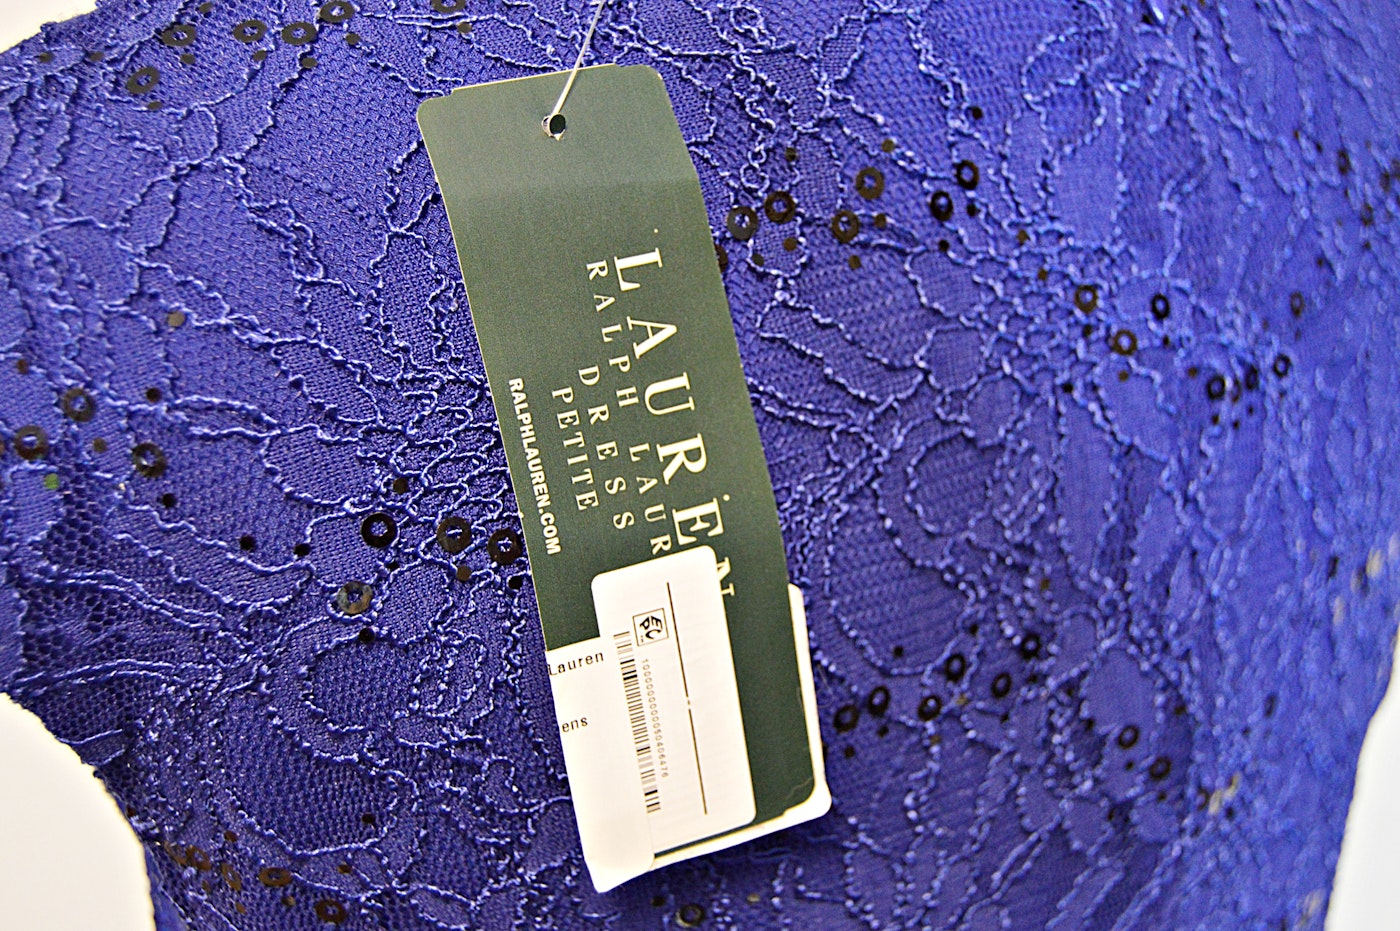 Ralph Lauren Green Label Blue Lace Cocktail Dress, 14P ...